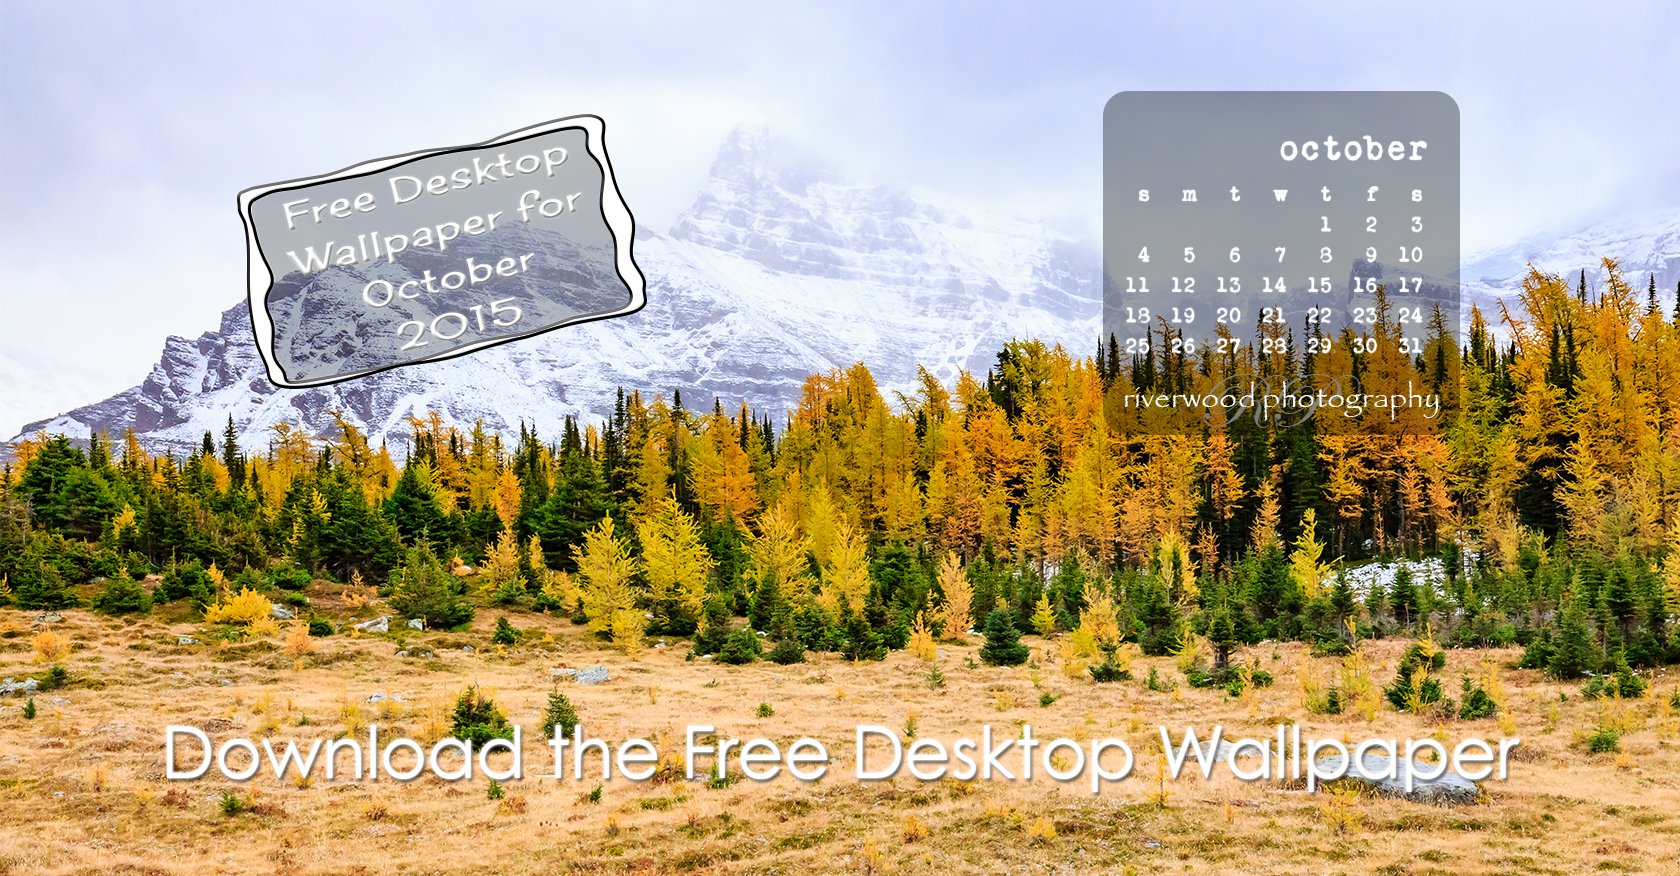 Free Desktop Wallpaper for September 2015